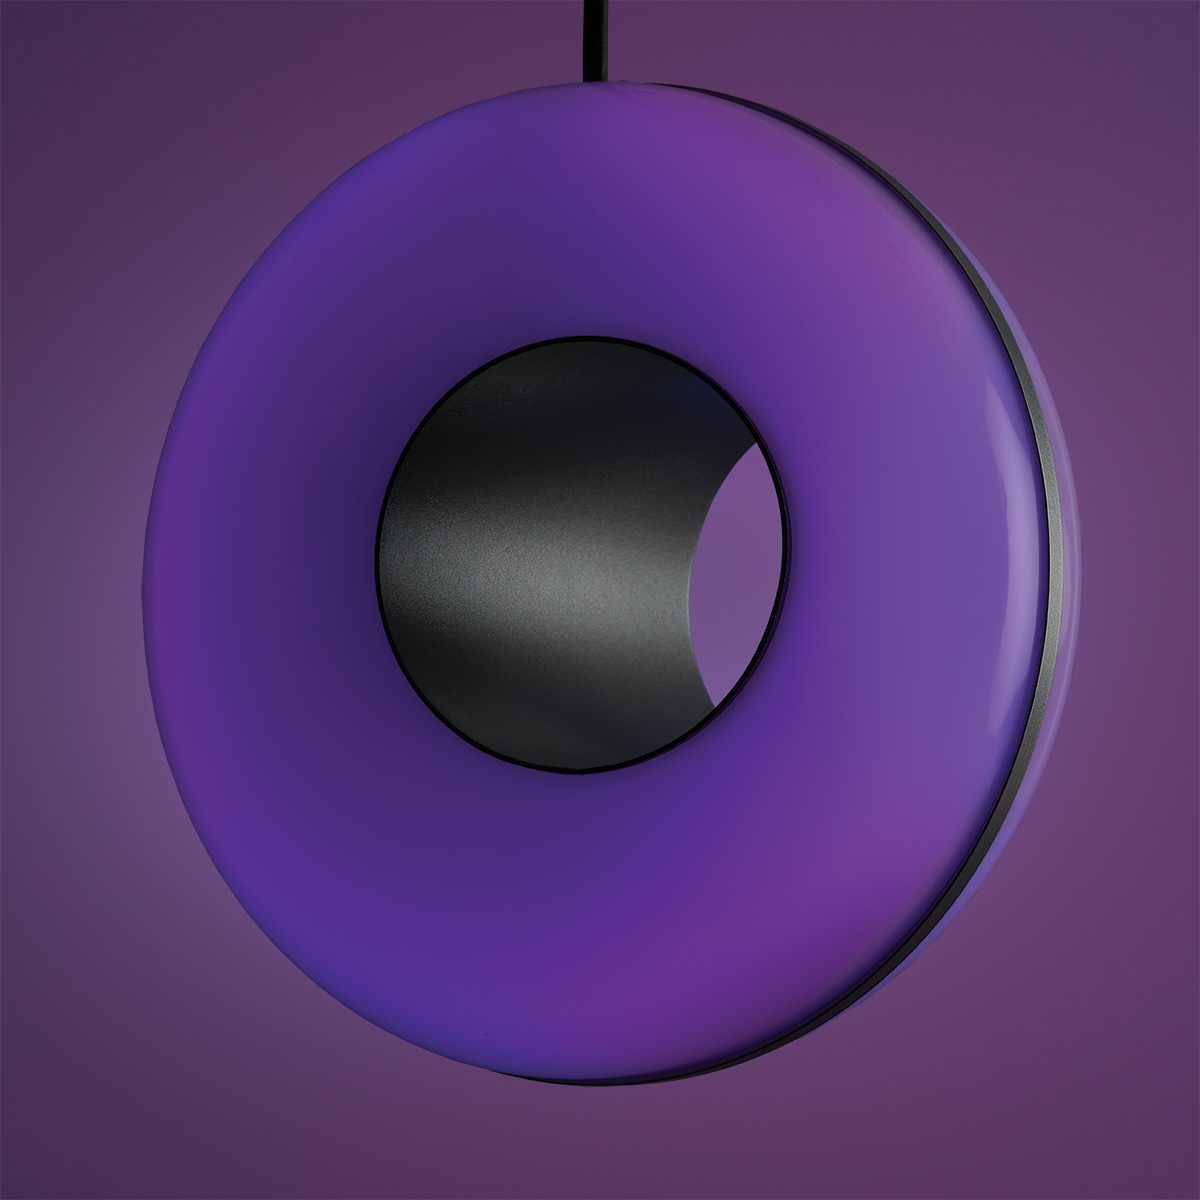 Unique RGB globe pendant light shown with purple light output. 